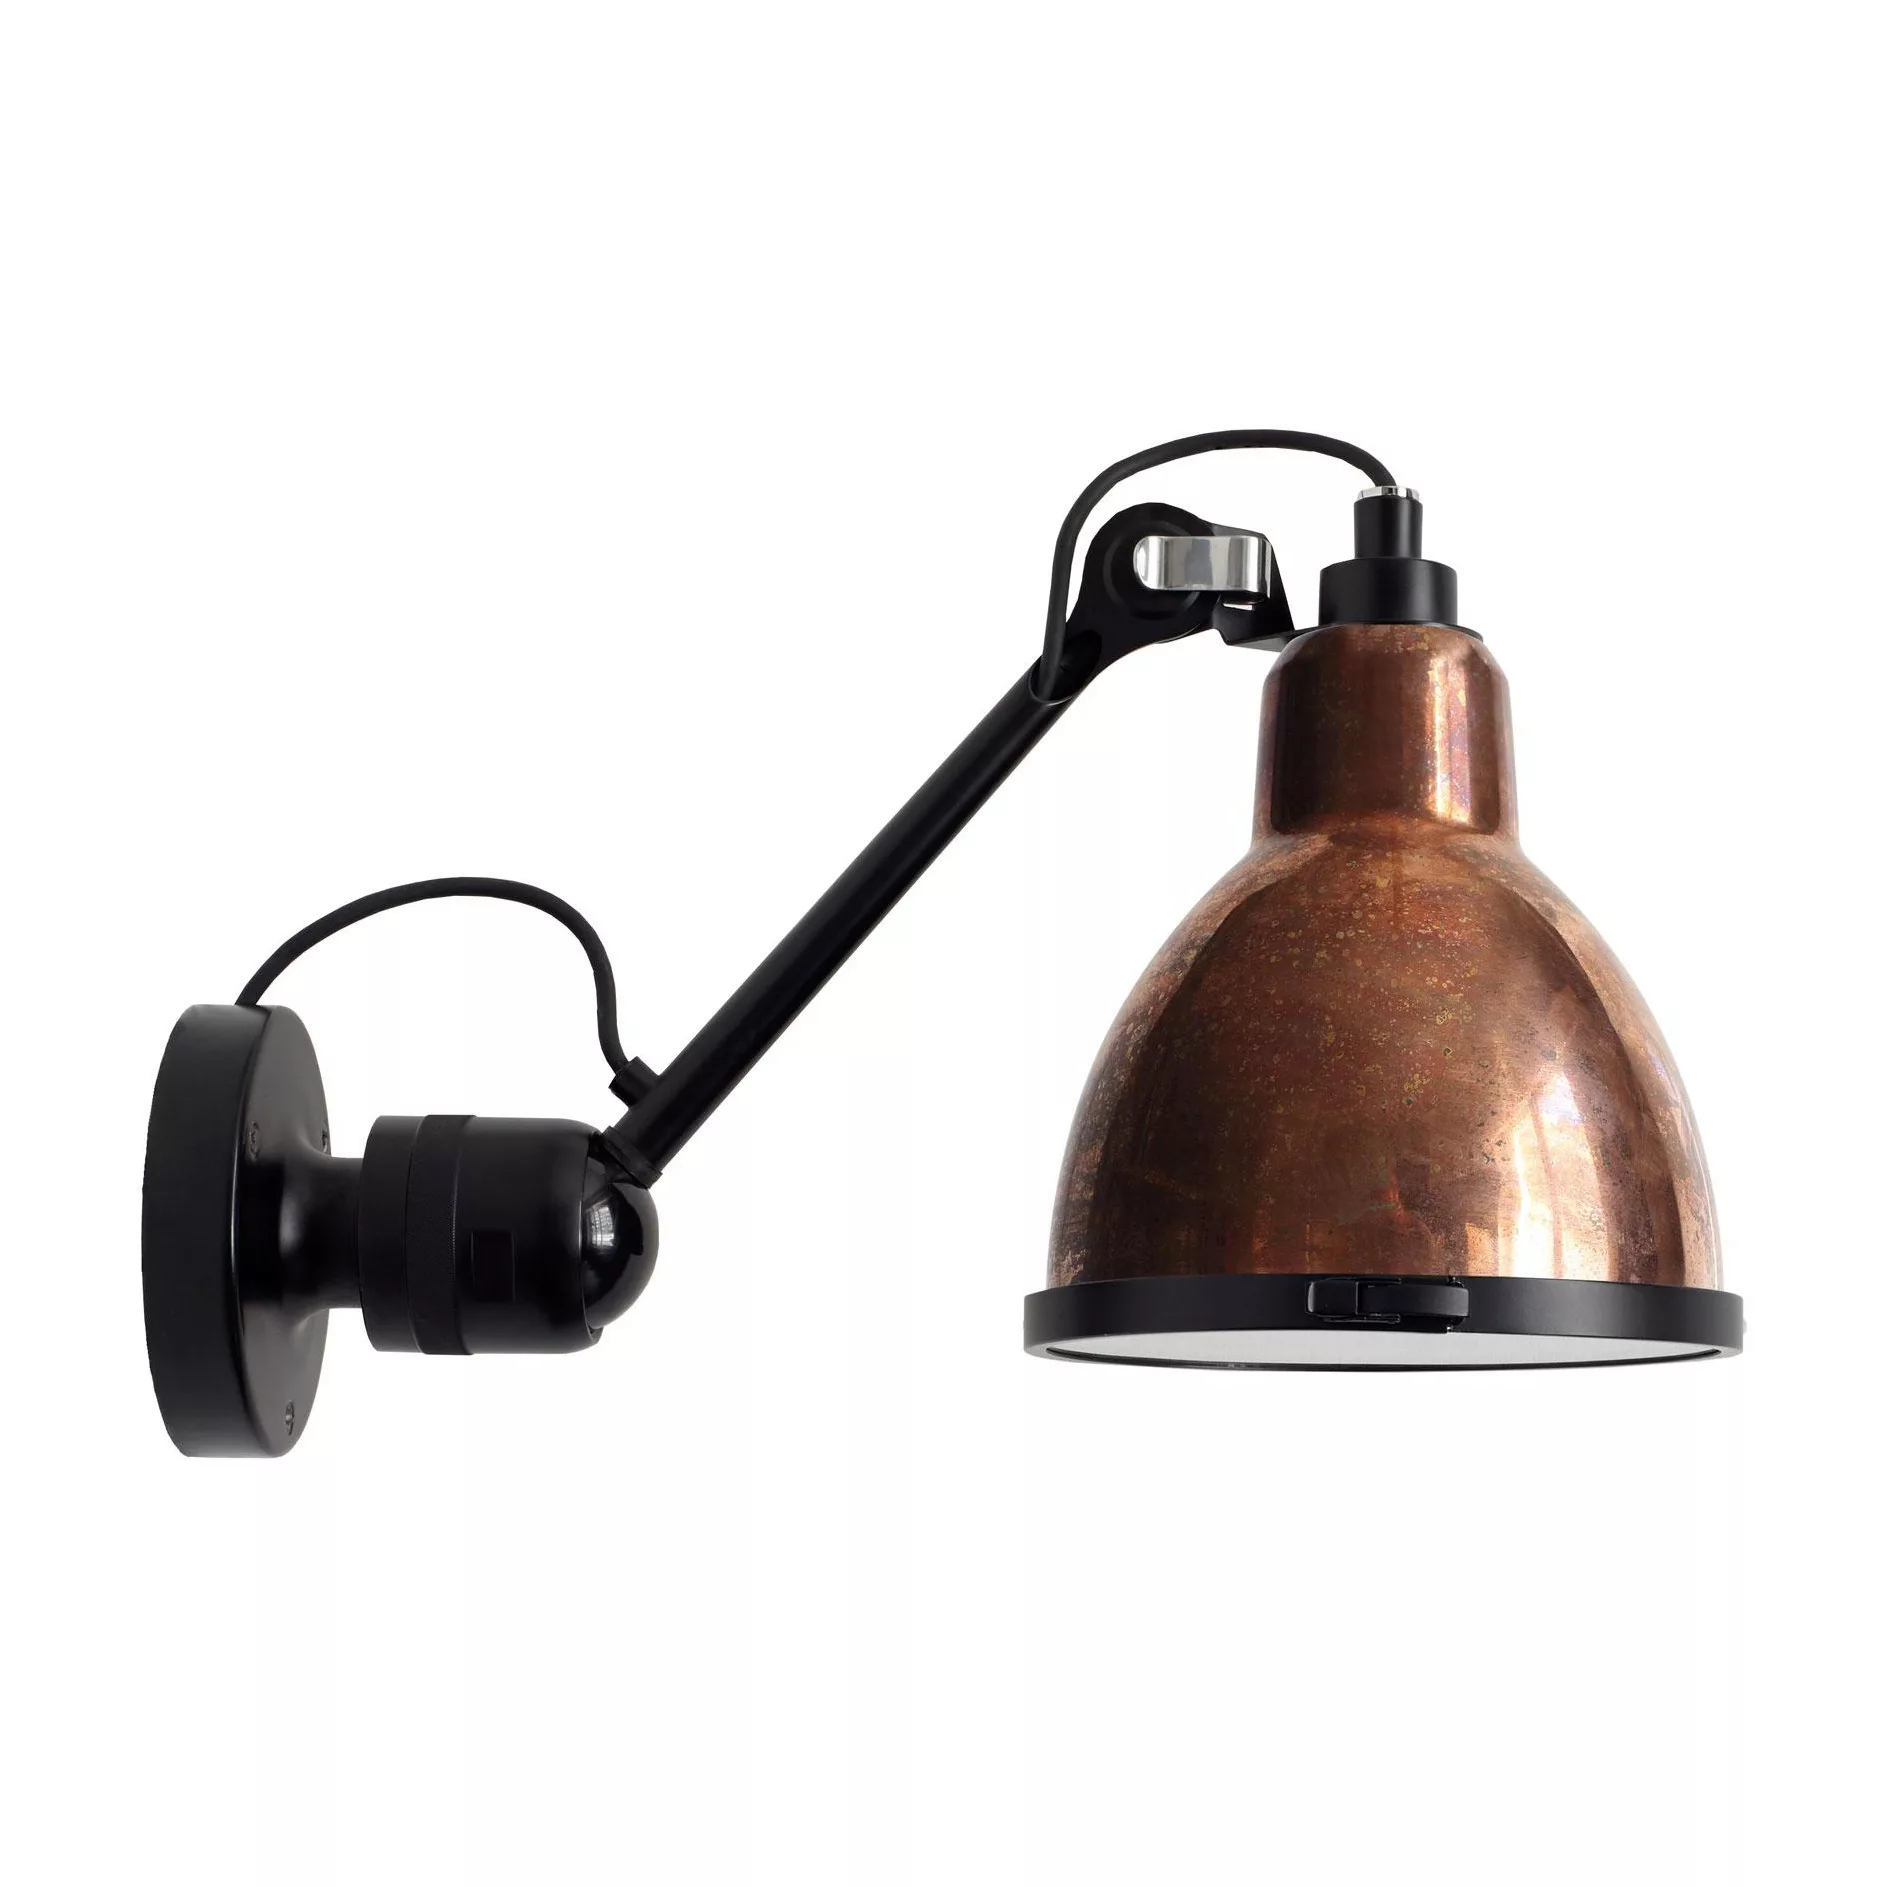 DCW - Lampe Gras N°304 XL Außenwandleuchte - kupfer/BxH 30,4x22cm günstig online kaufen